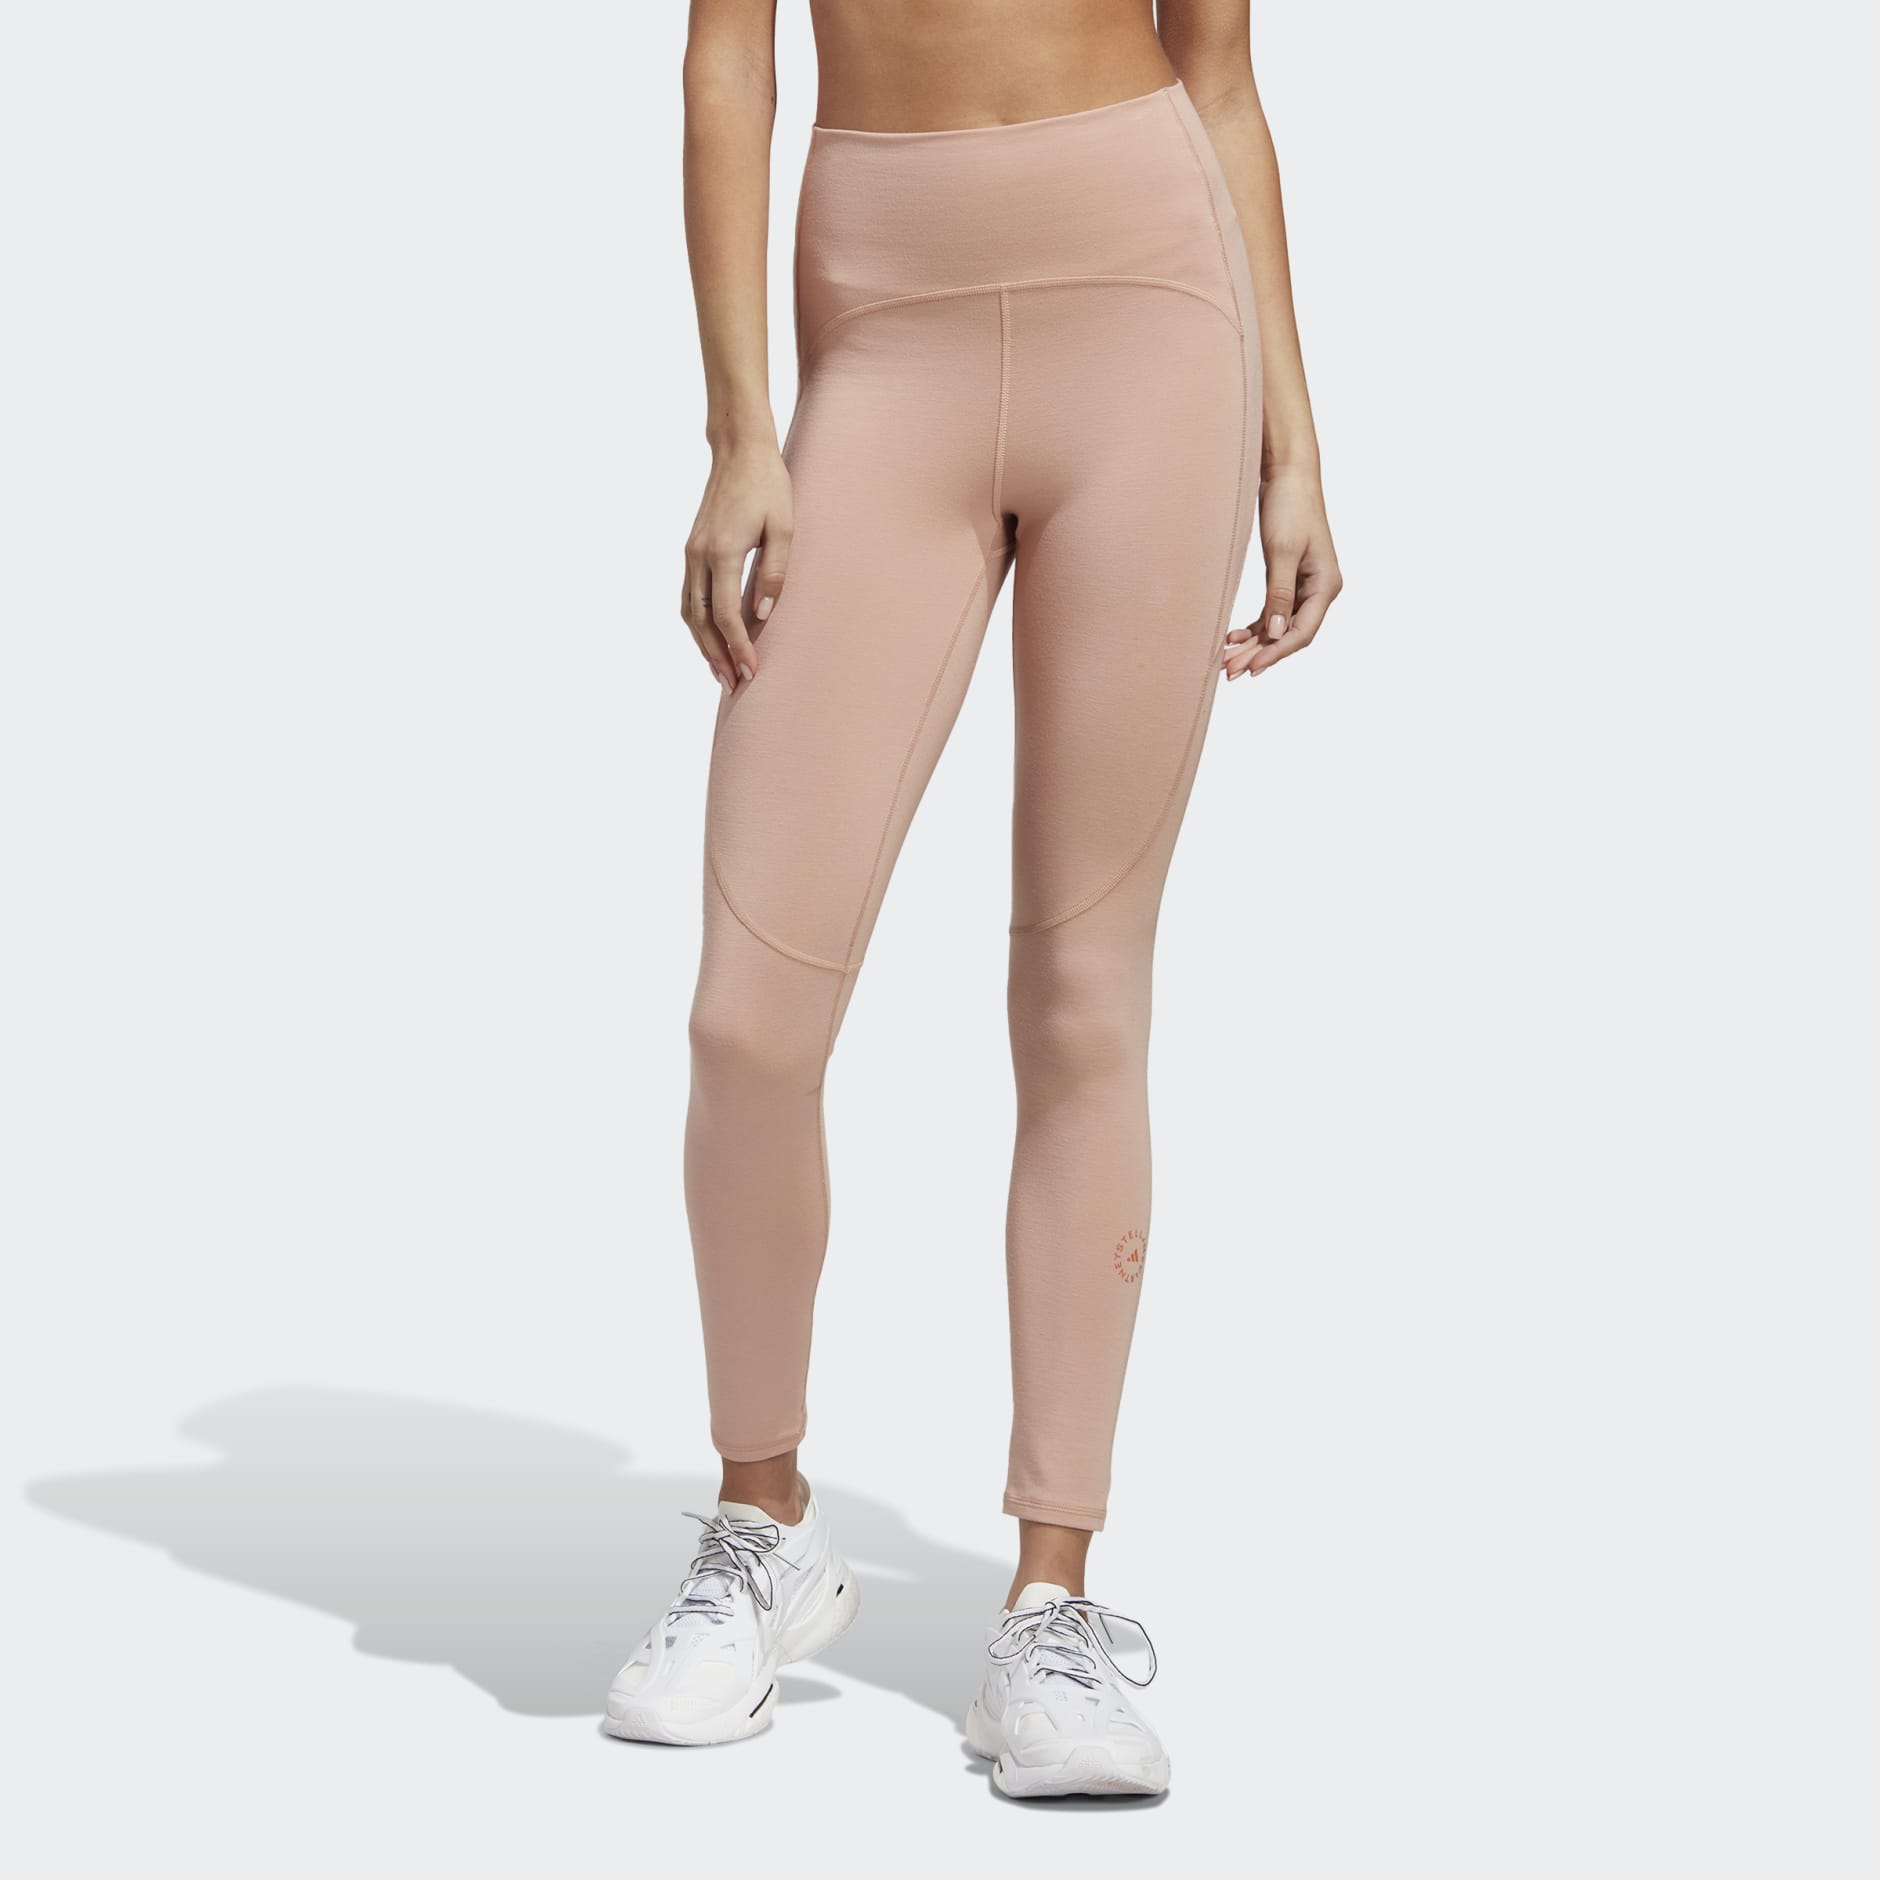 Clothing - adidas by Stella McCartney 7/8 Yoga Leggings - Brown